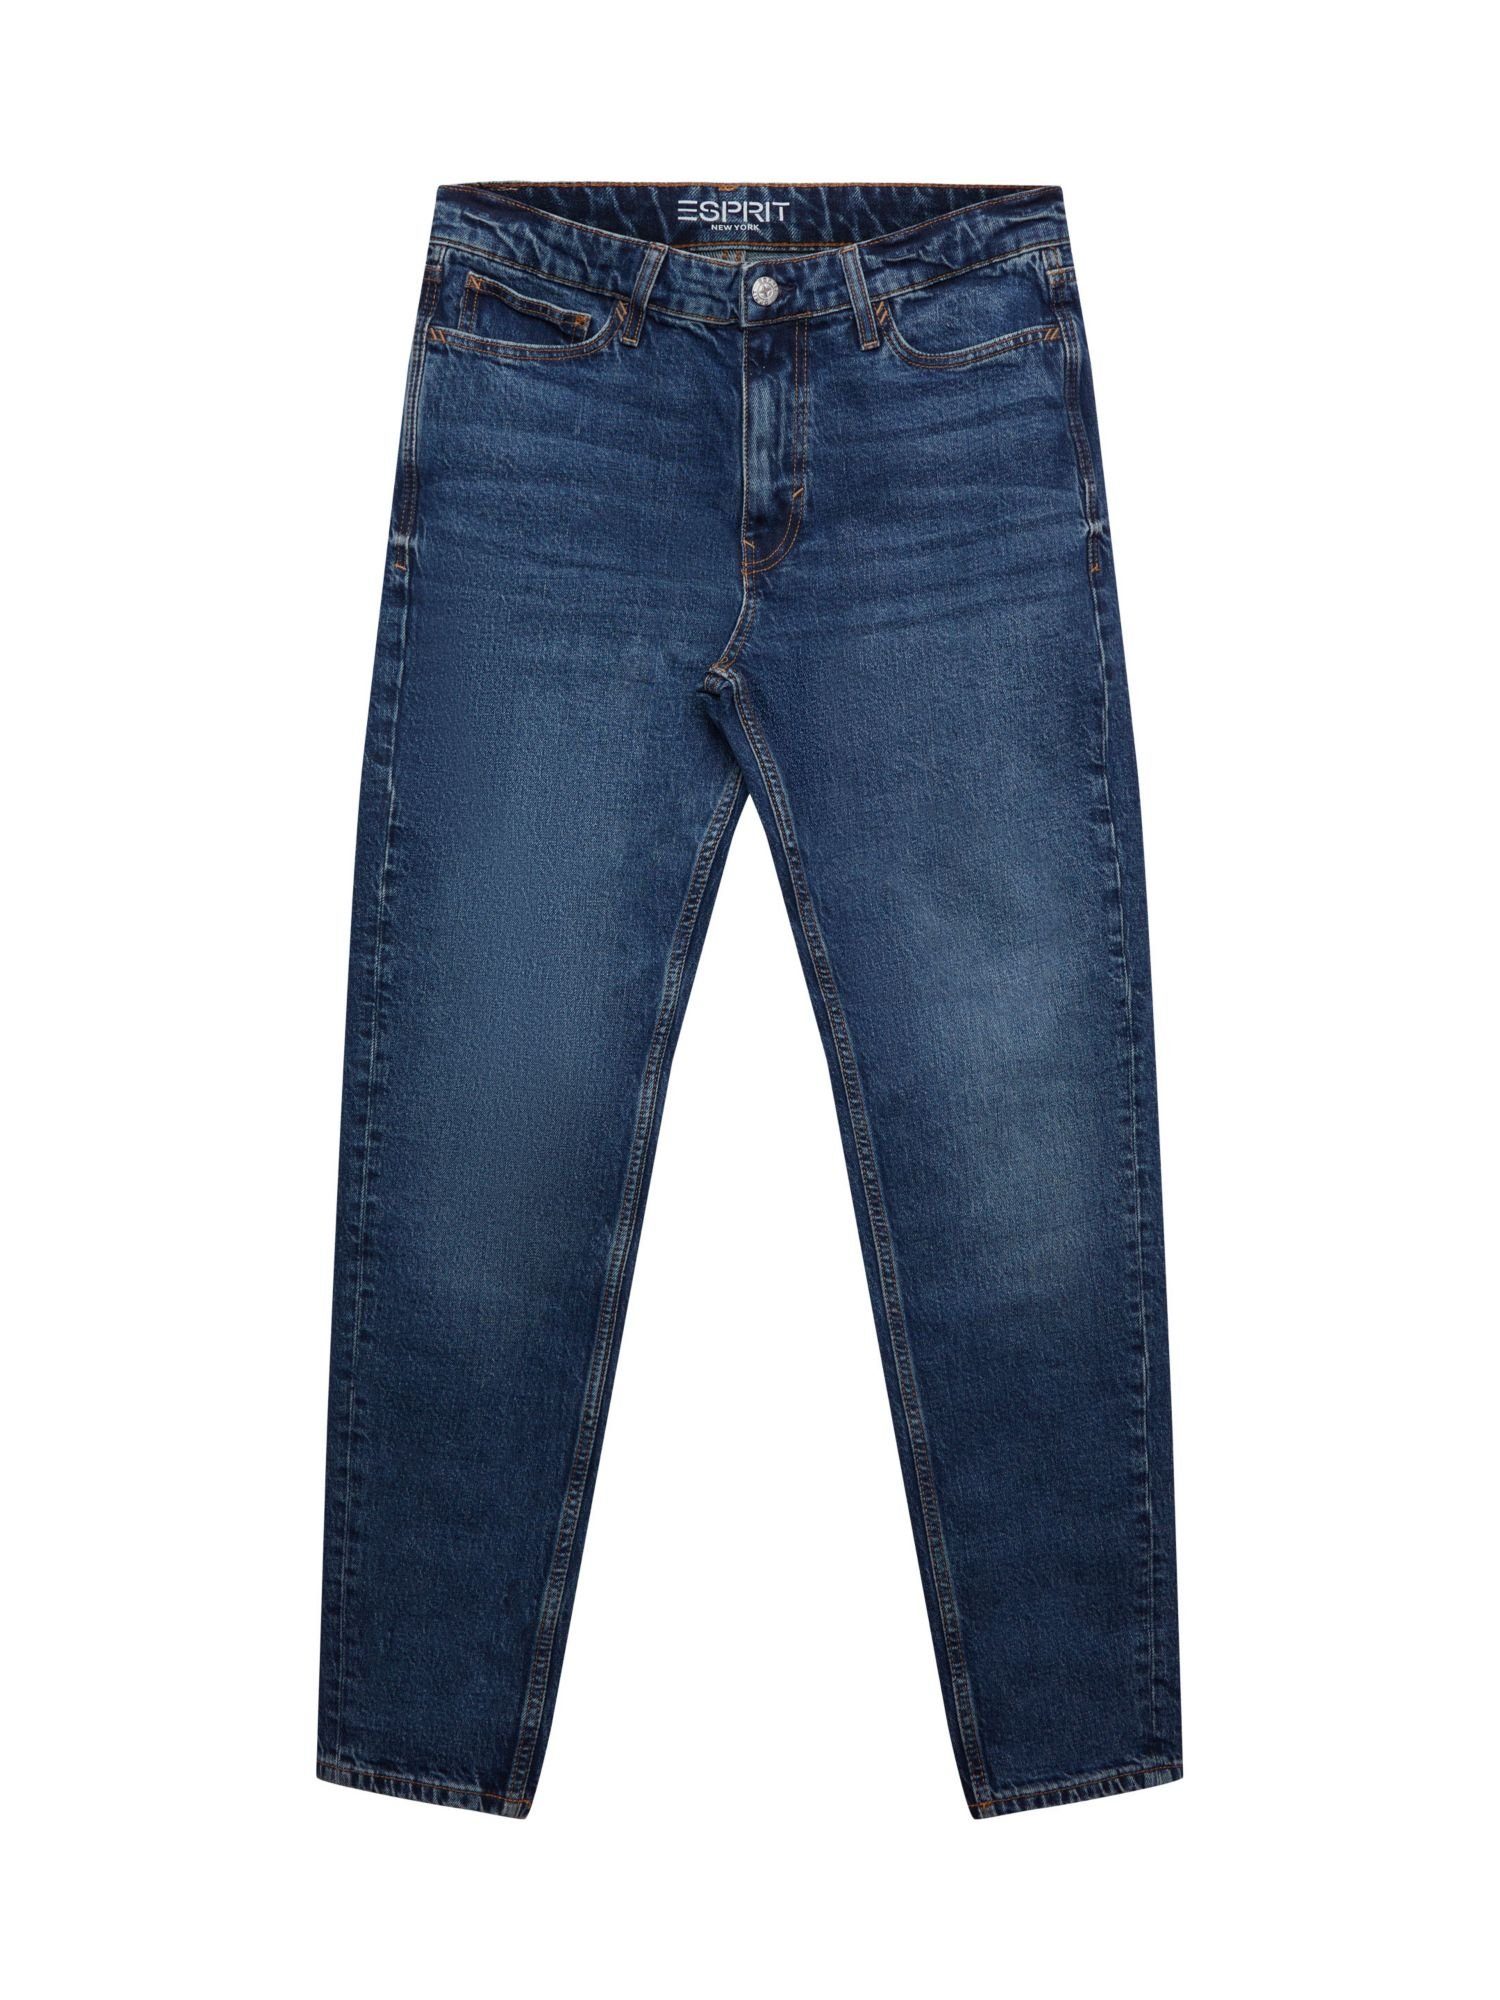 Esprit Straight-Jeans Gerade, konische mit Jeans mittelhohem Bund